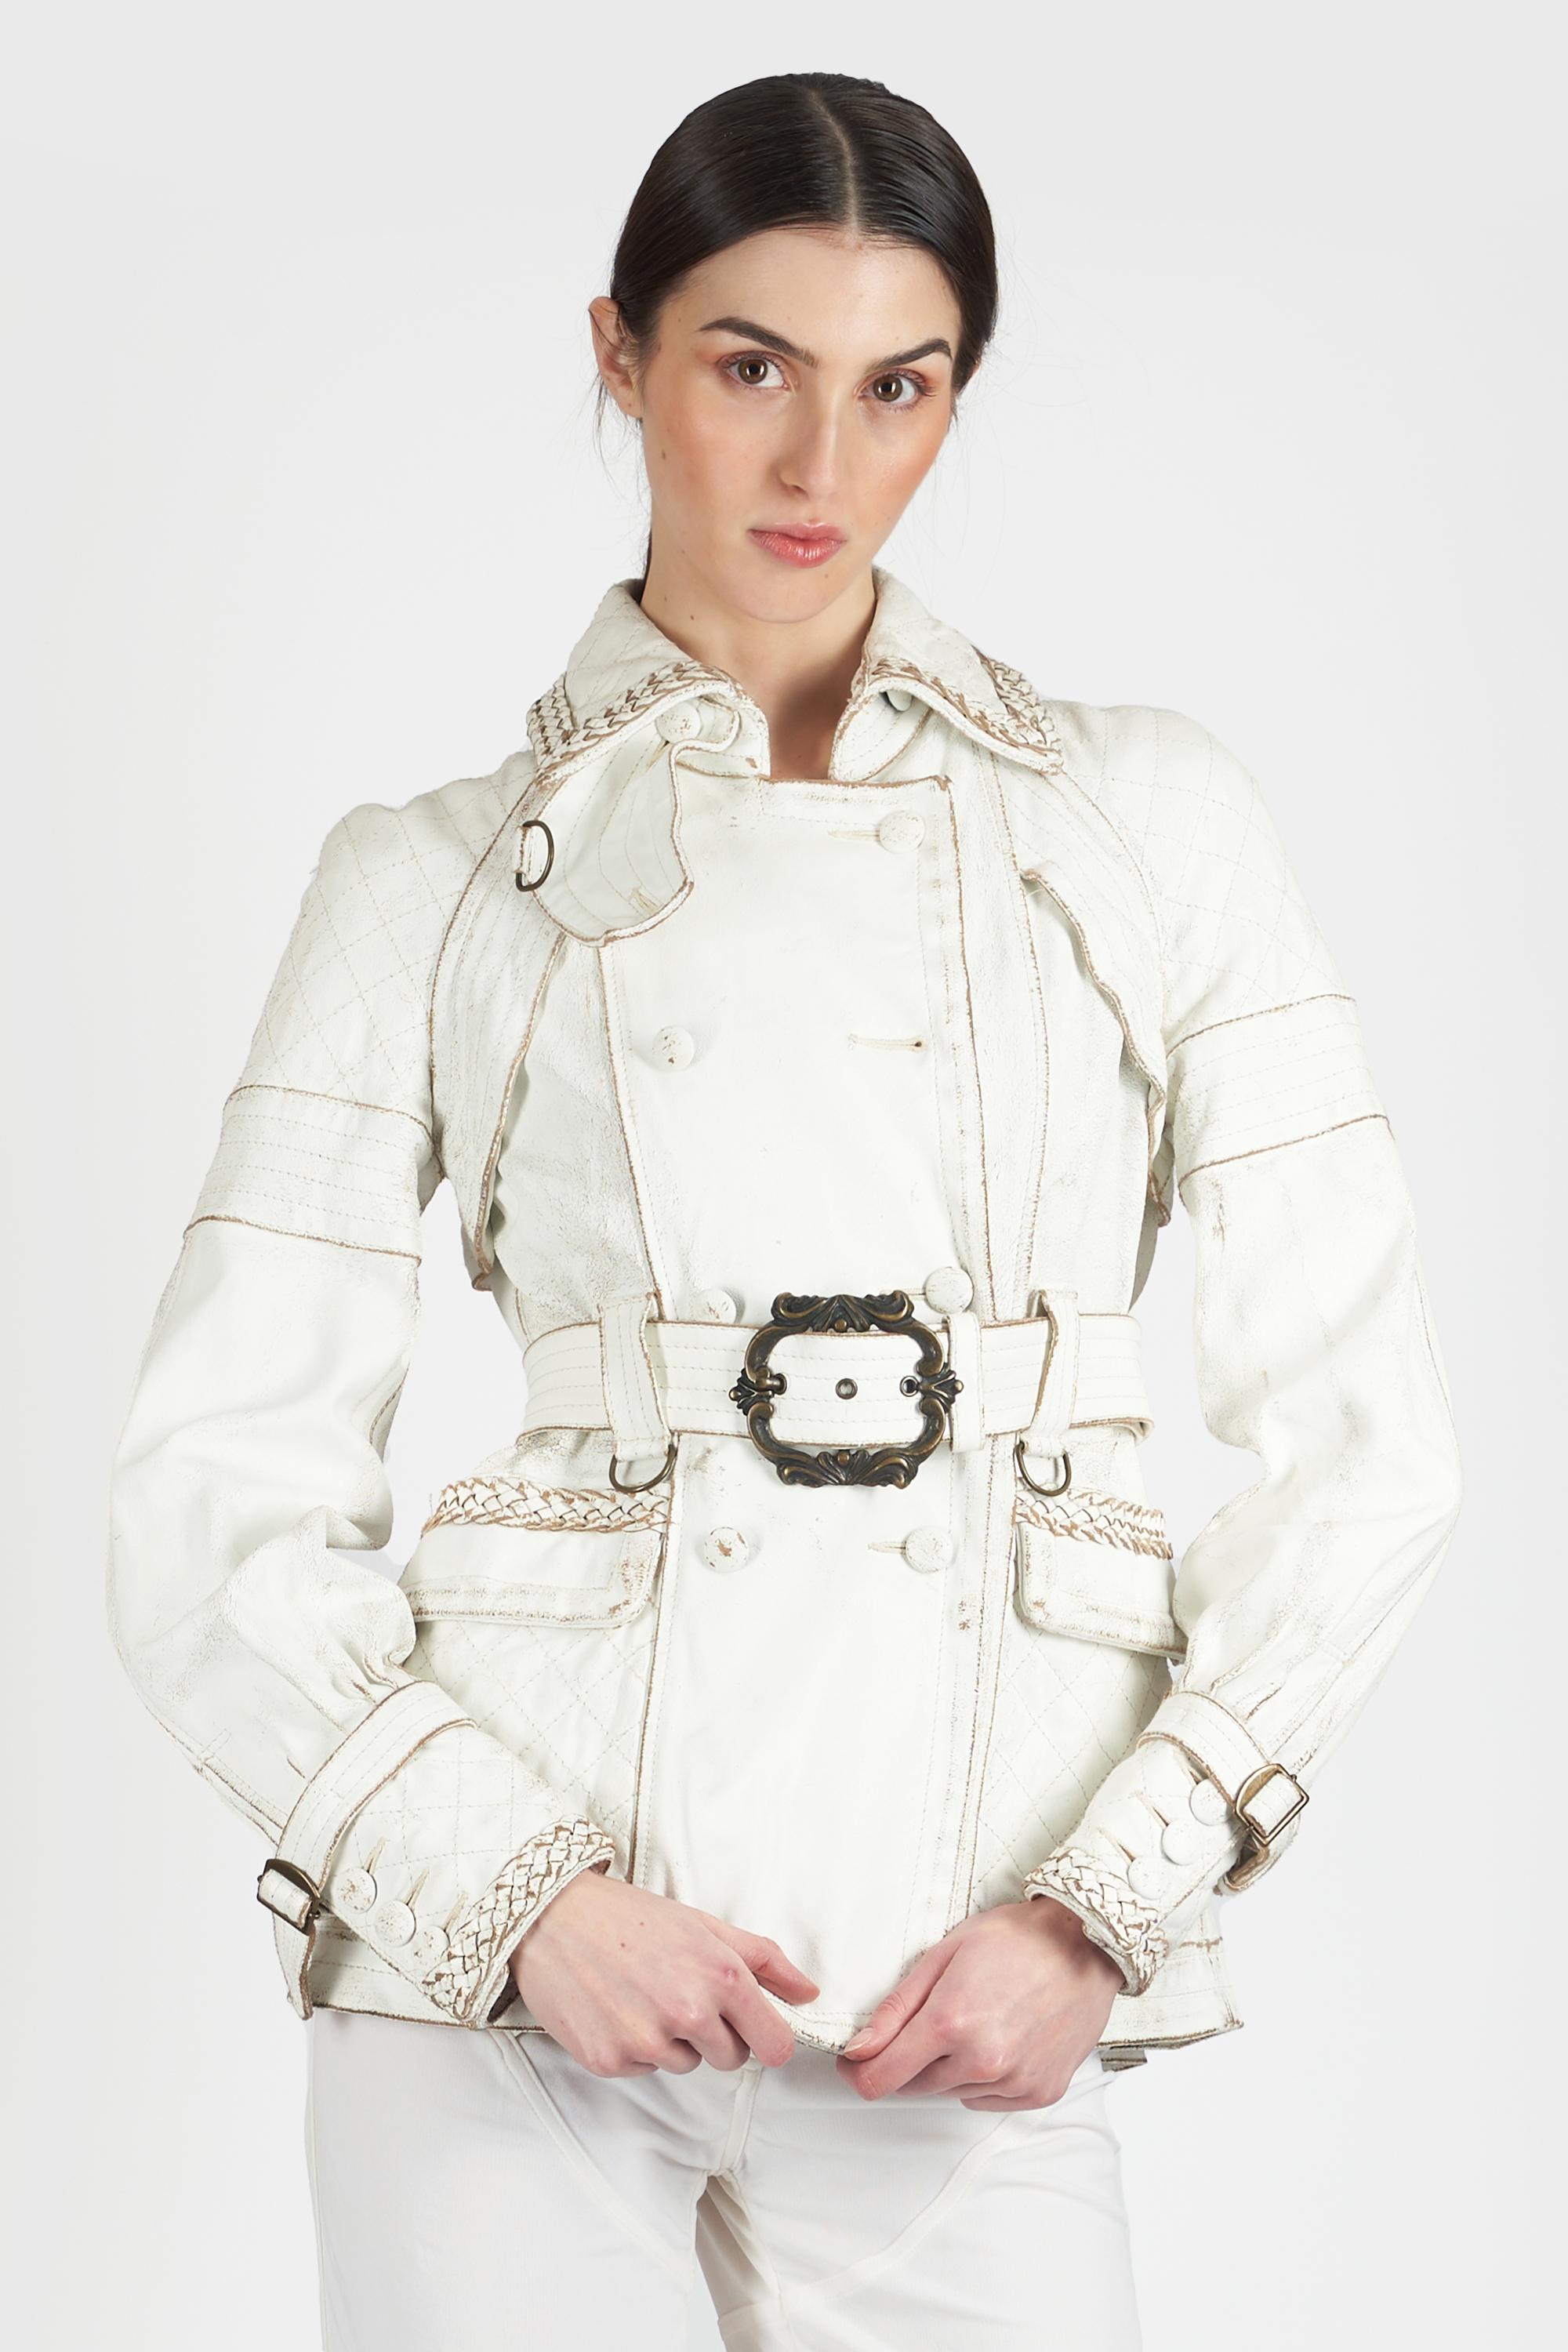 Die weiße Jacke von Roberto Cavalli 2000. Mit abgenutztem Leder, einem Gürtel und Knopfverschluss. In großem Vintage-Zustand, bitte beachten Sie, dass ein Knopf fehlt.

Marke:Roberto Cavalli
Größe:UK 8
Farbe: Weiß
Größe des Labels: 40 IT
Moderne